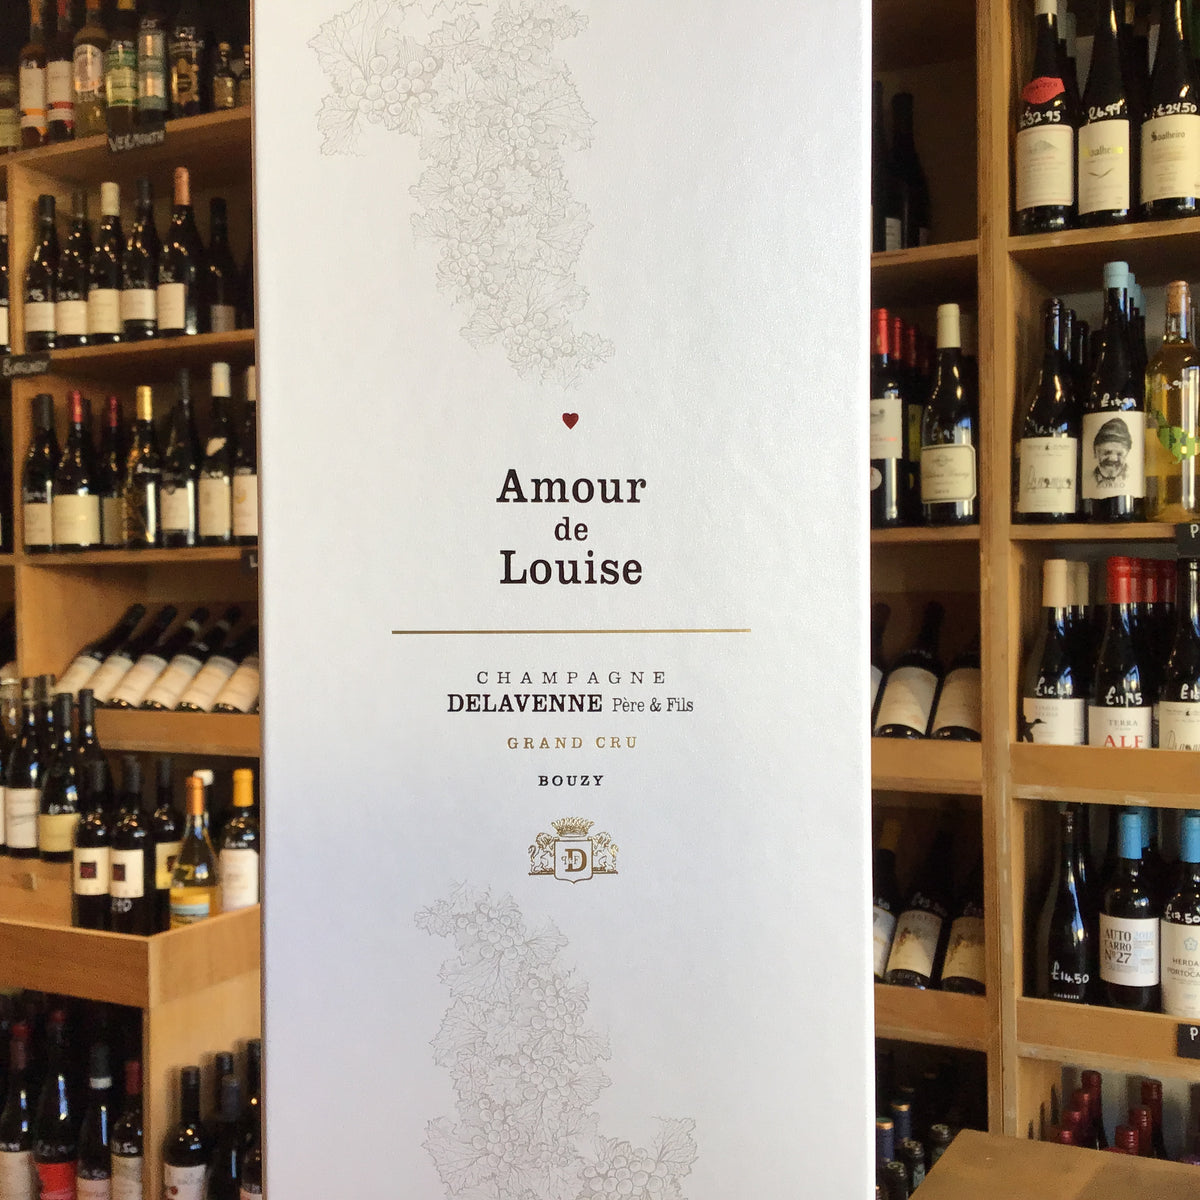 Delavenne Champagne Grand Cru Amour de Louise NV - Butlers Wine Cellar Brighton